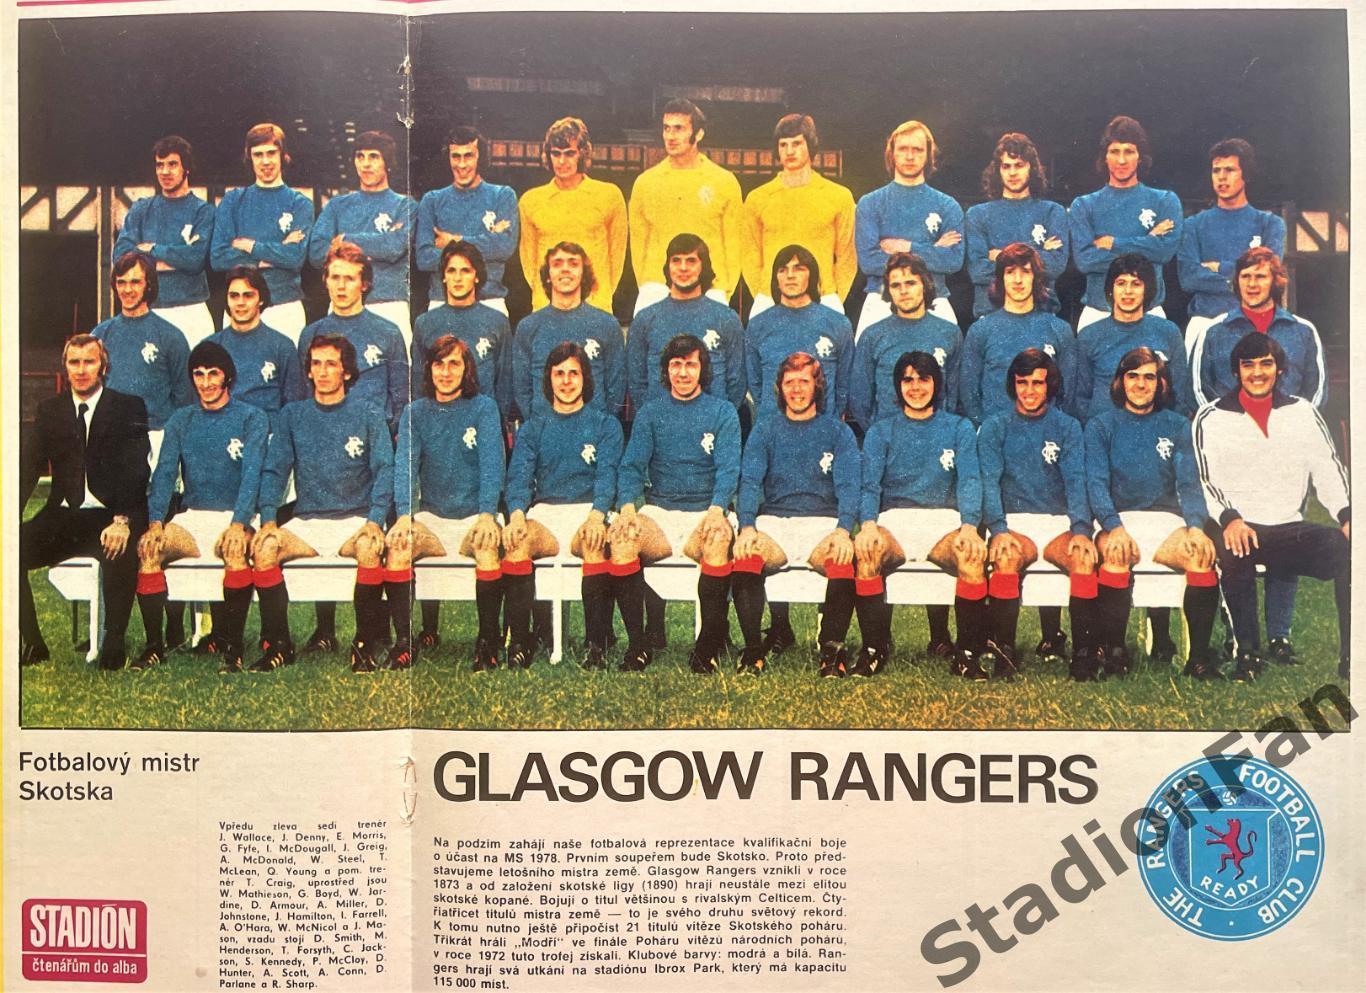 Постер из журнала Stadion - Glasgow Rangers, 1976.